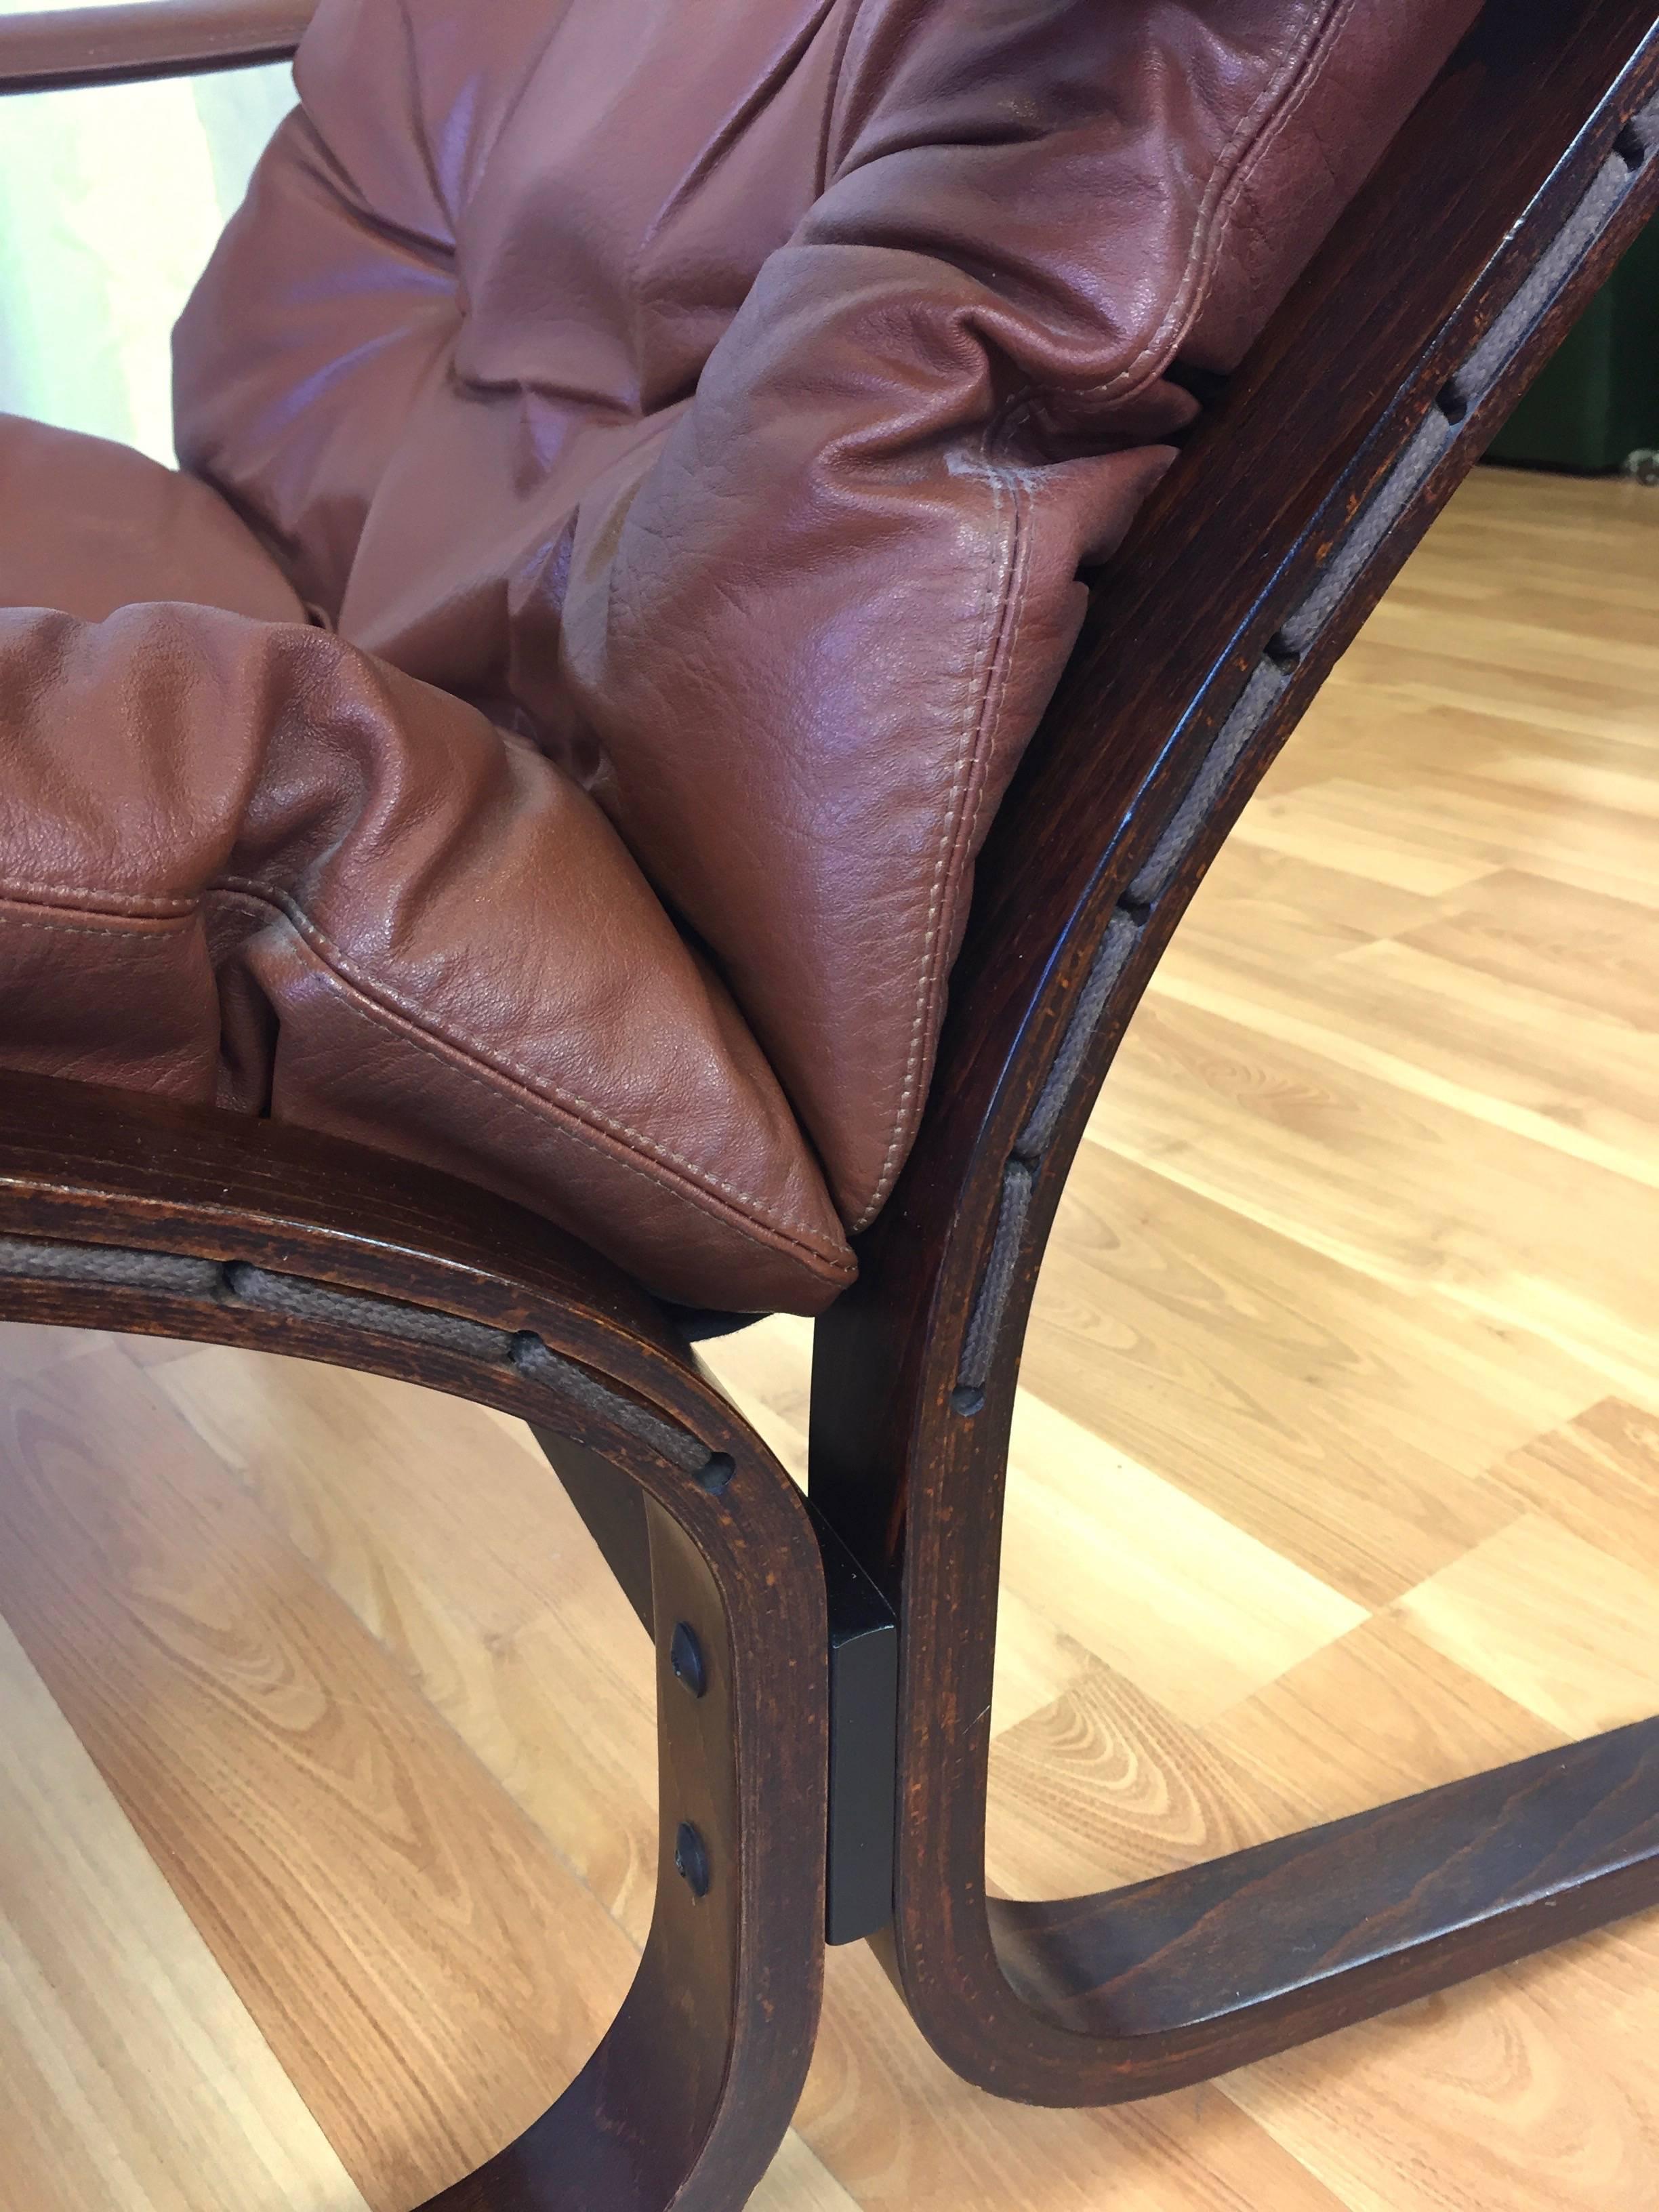 Norwegian Pair of “Siesta” Lounge Chairs by Ingmar Relling for Westnofa